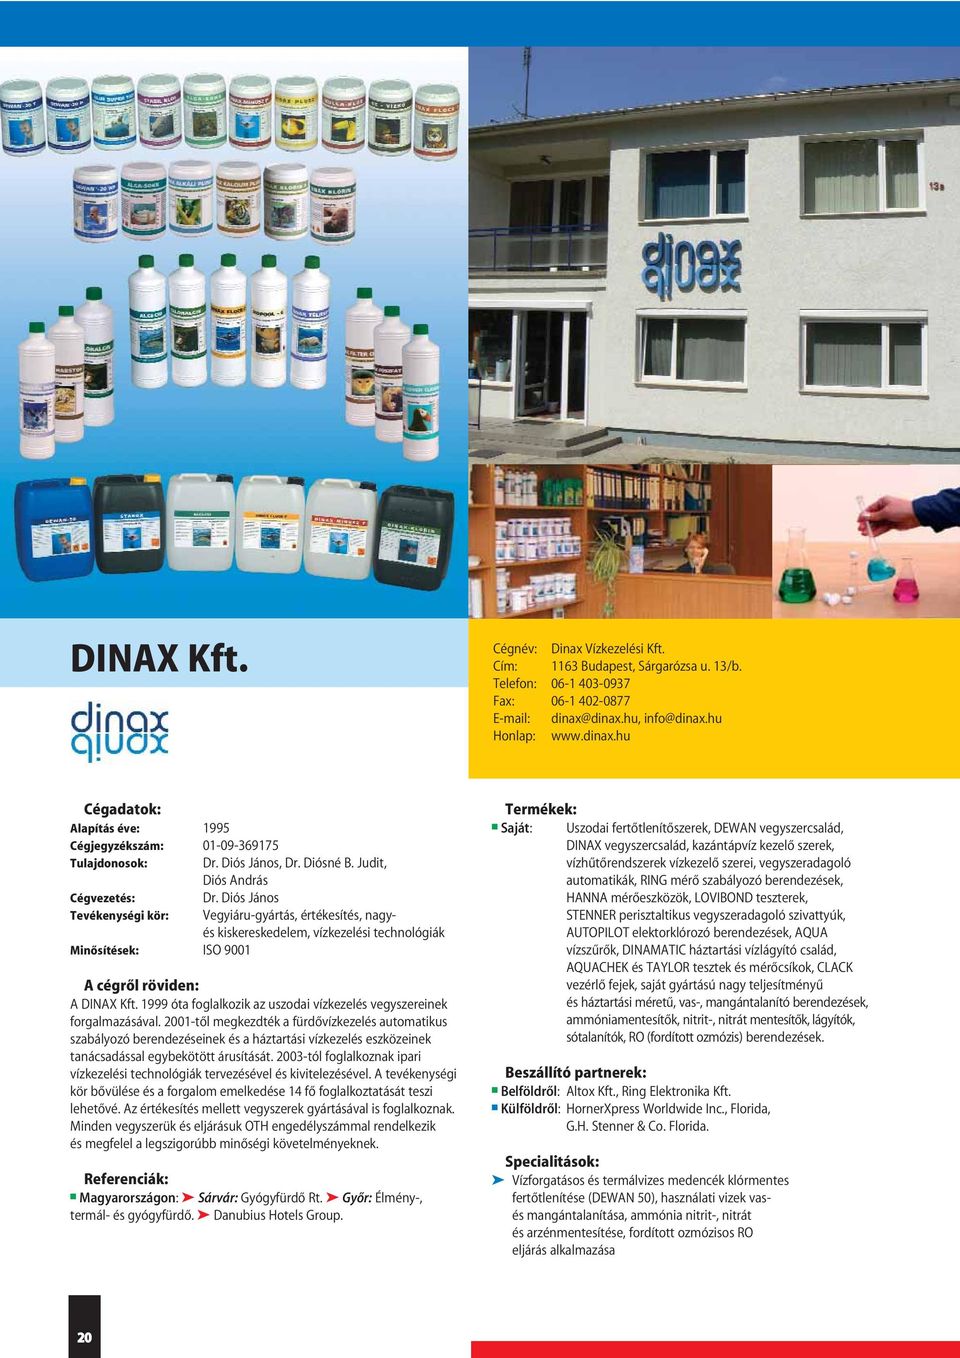 Diós János Vegyiáru-gyártás, értékesítés, nagyés kiskereskedelem, vízkezelési technológiák A DINAX Kft. 1999 óta foglalkozik az uszodai vízkezelés vegyszereinek forgalmazásával.